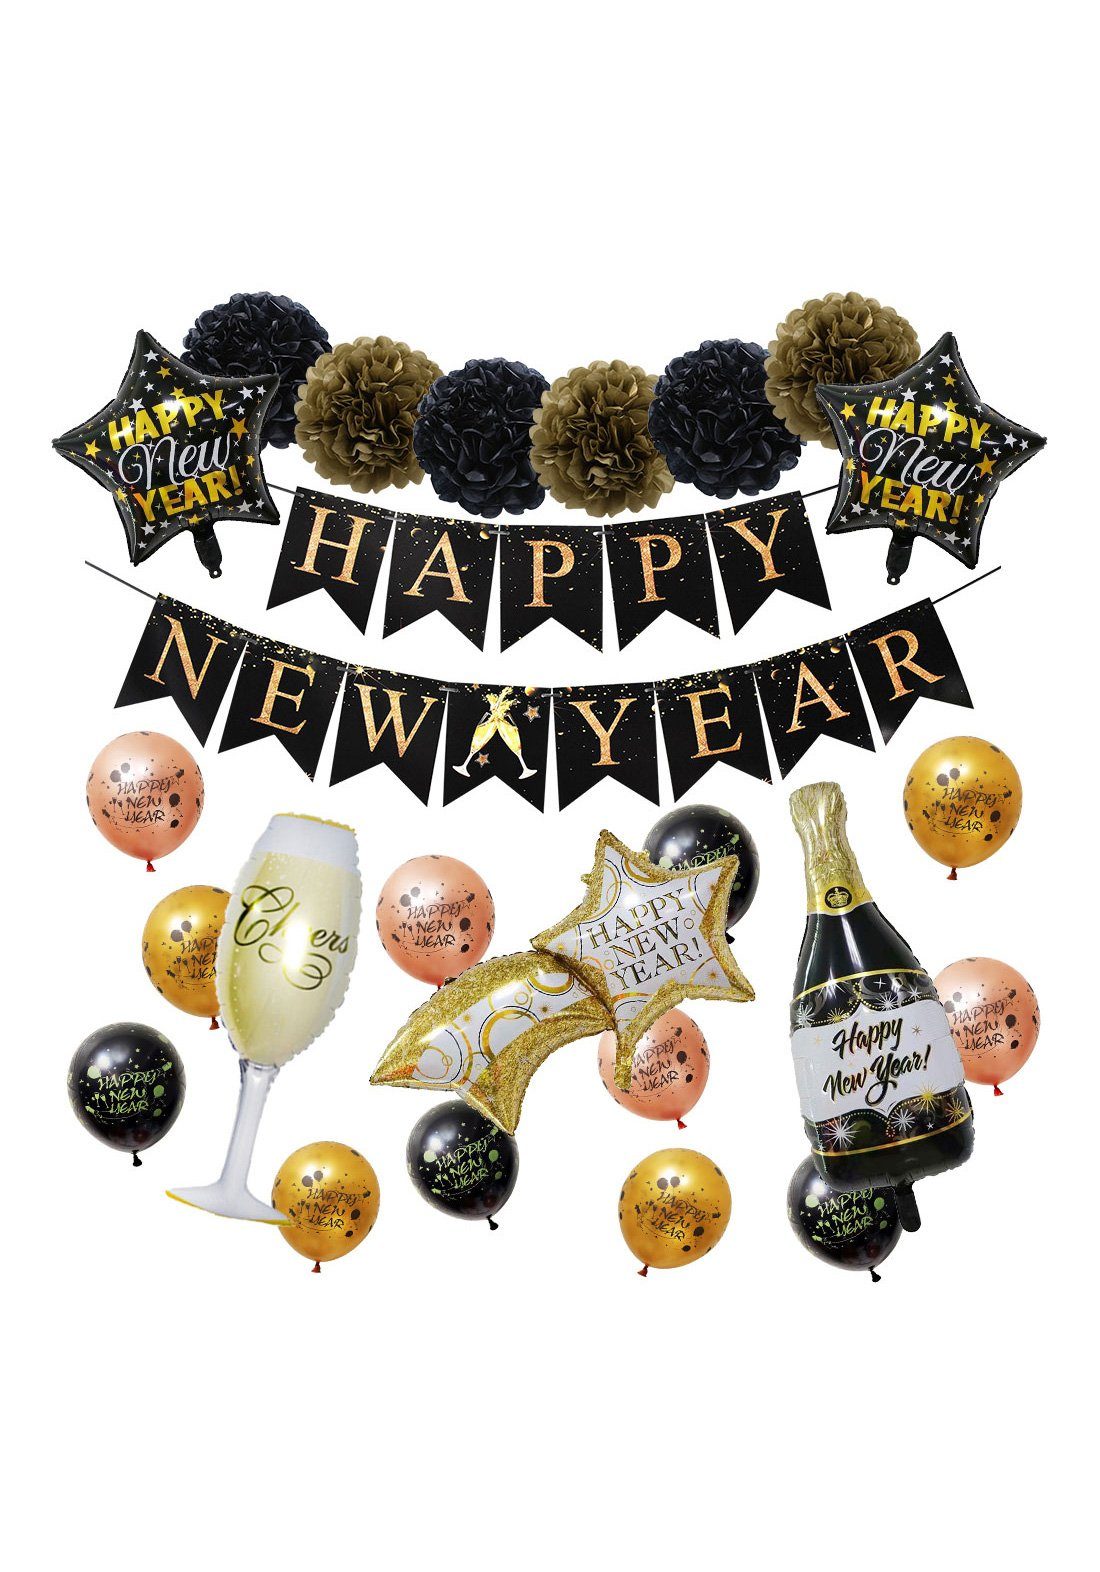 Vivi Idee Silvester deko Year, New Banner Luftballon Partydeko Set Papier Luftballon Neujahr Happy